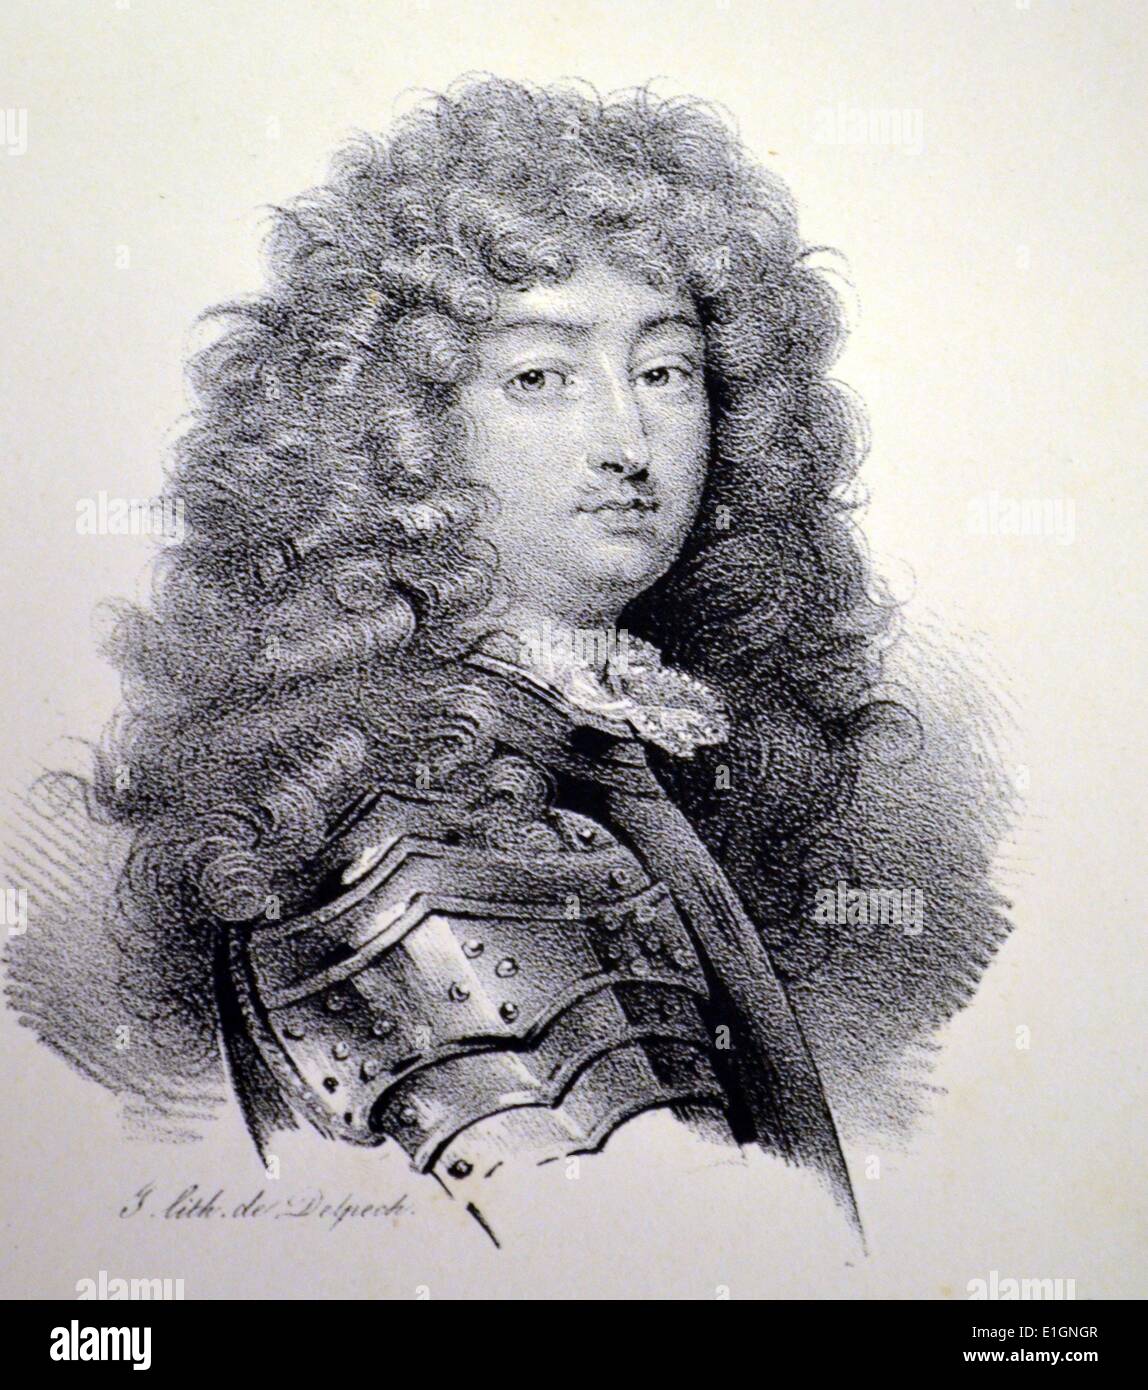 Louis XIV (1638-1715) le Roi Soleil. Roi de France 1613-1715. Lithographie, Paris, c1840. Banque D'Images